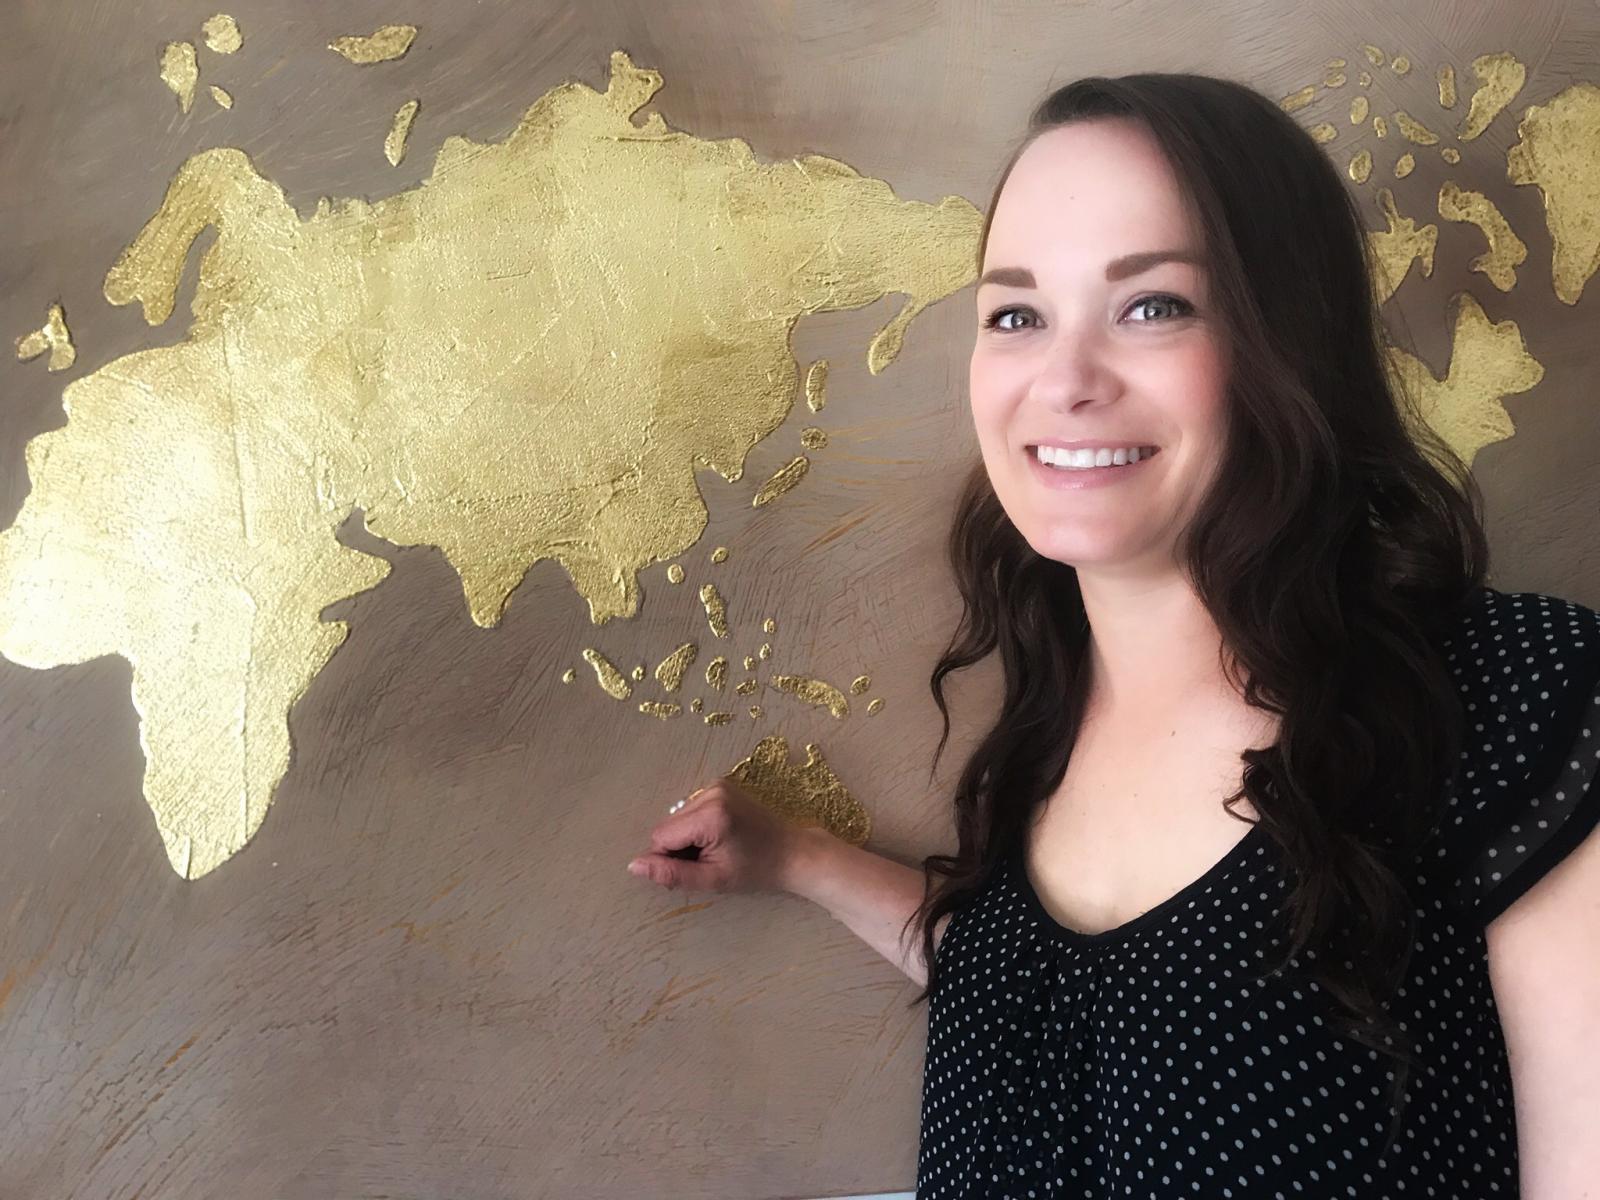  Isabelle Baril souriant devant un mur avec les continents peints dessus 